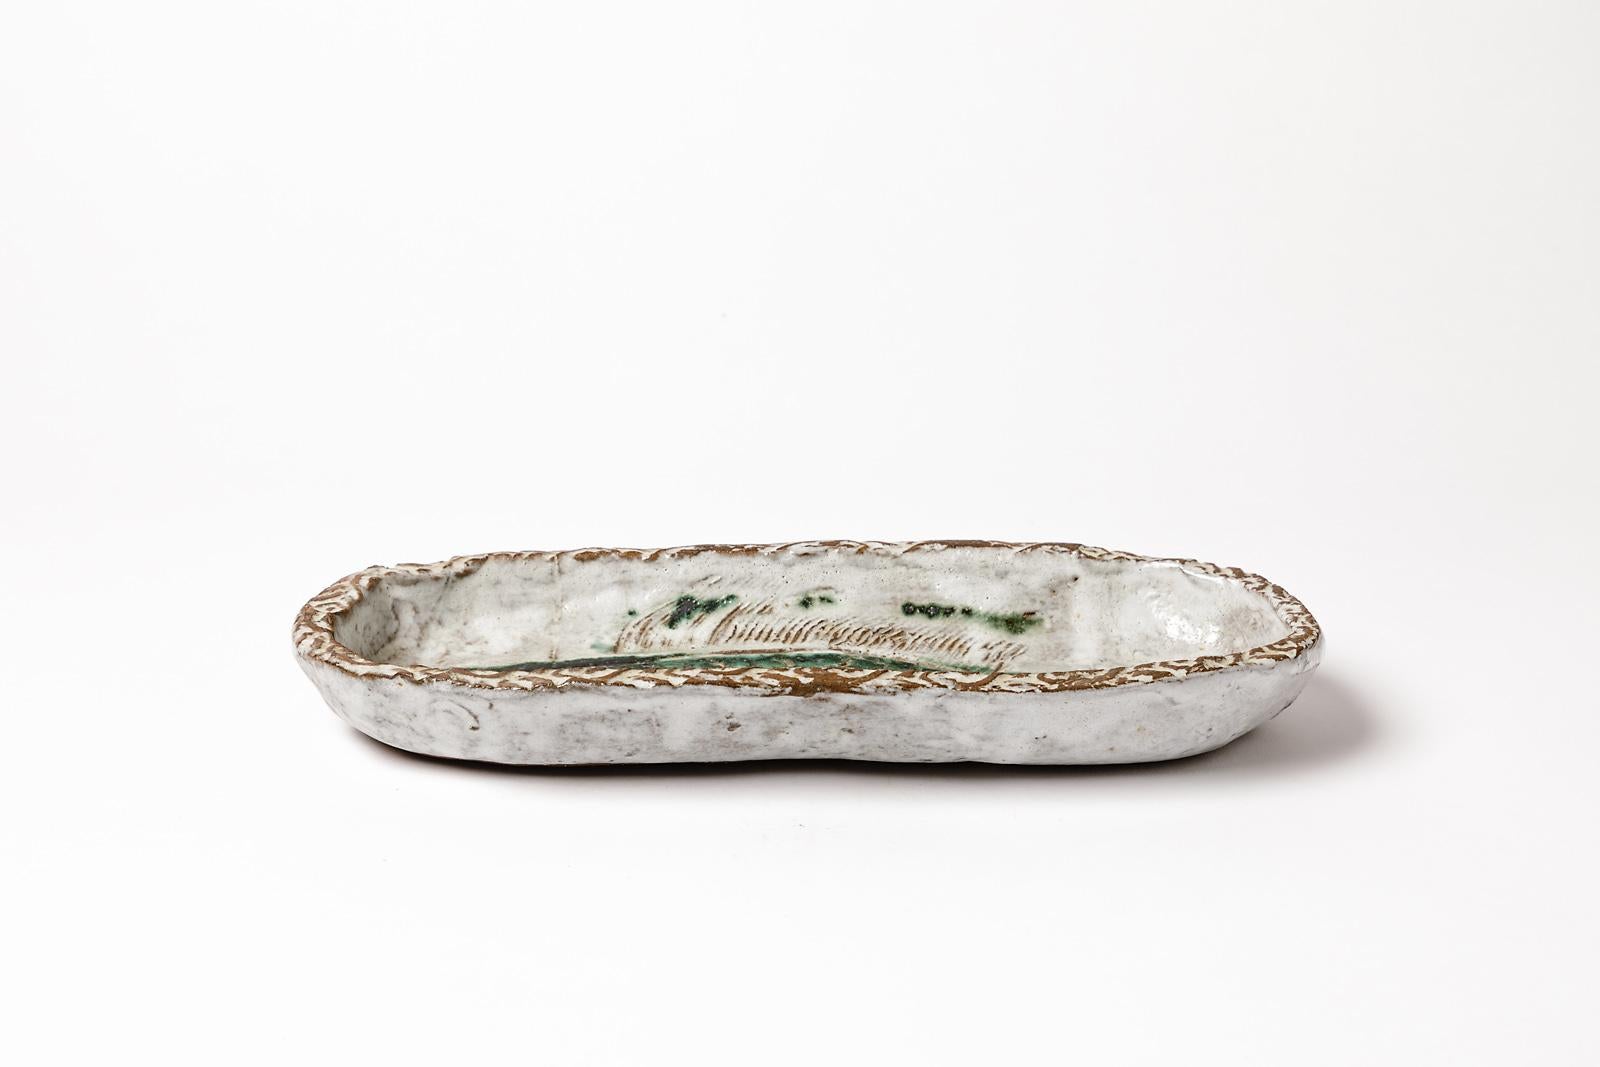 Albert Thiry

Grande assiette en céramique grès animalière de l'artiste français, vers 1950

Décoration de poissons avec des couleurs d'émaux céramiques vertes et bleues

Signé sous la base

Conditions d'origine parfaites

Mesures :